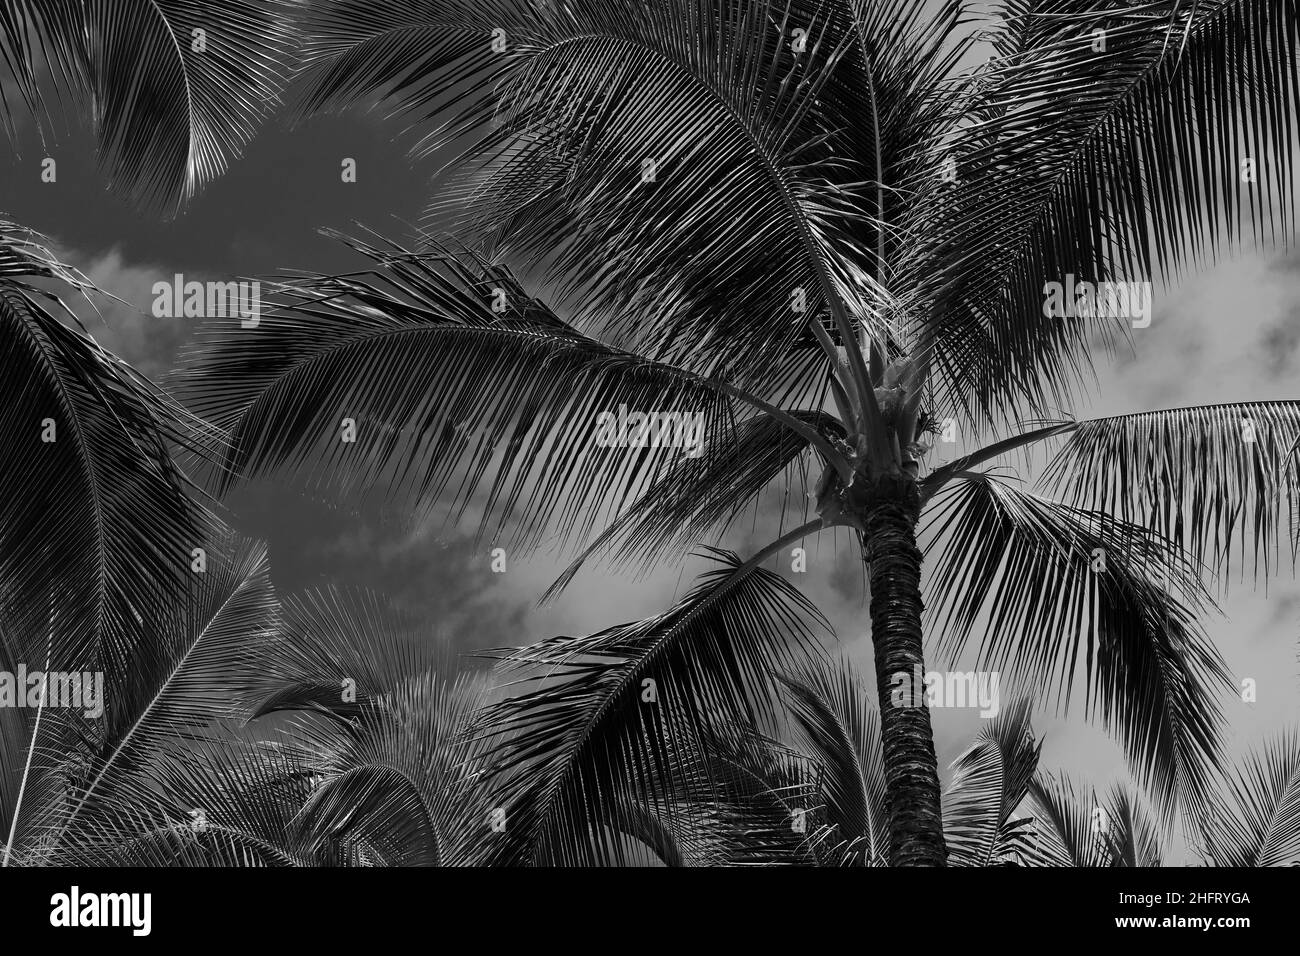 Une photo d'art noir et blanc de palmiers contre le ciel, Hawaï Banque D'Images